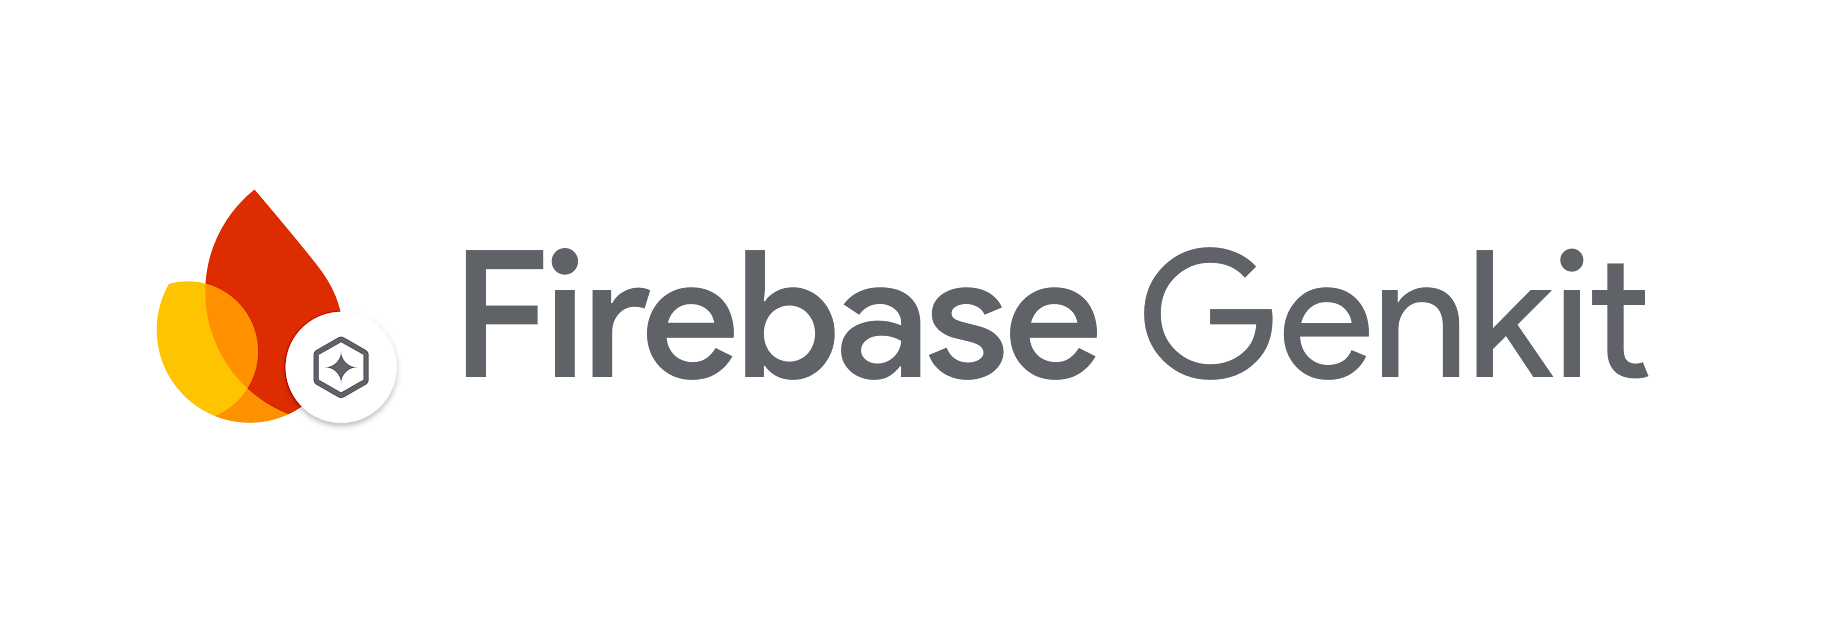 Firebase Genkit logo